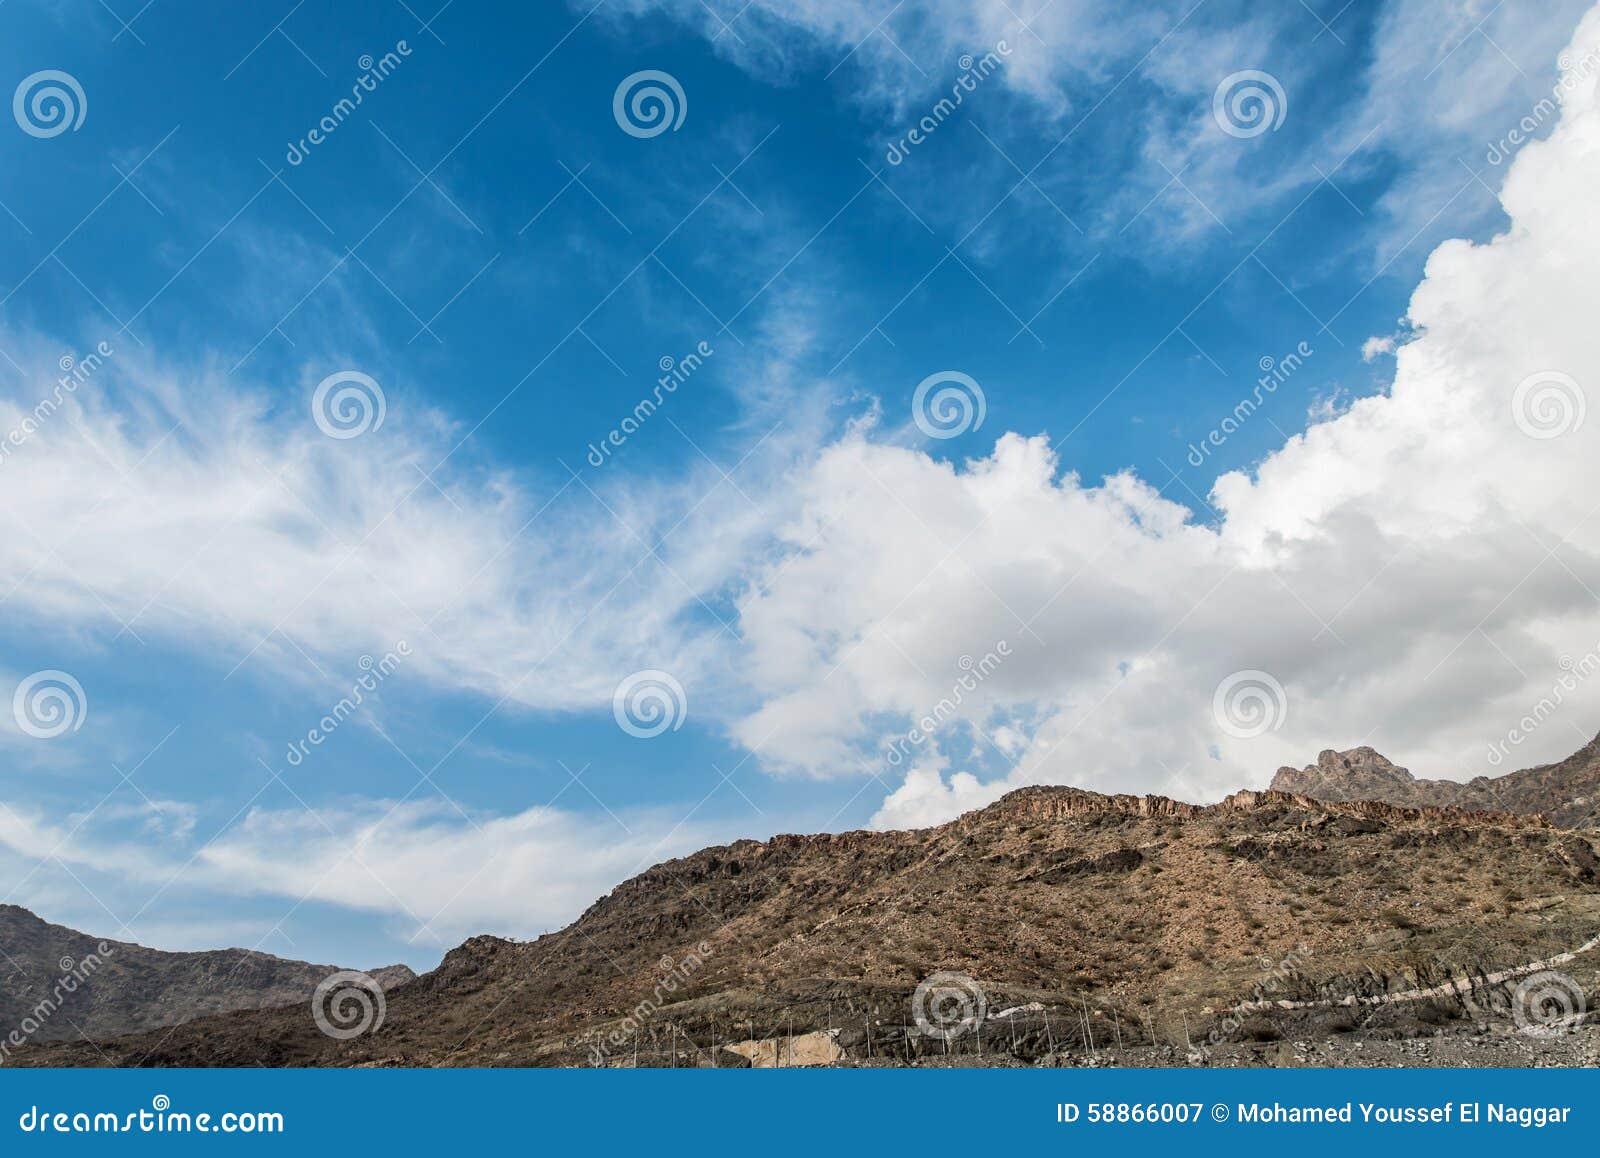 clouds on al hada mountains in saudi arabia